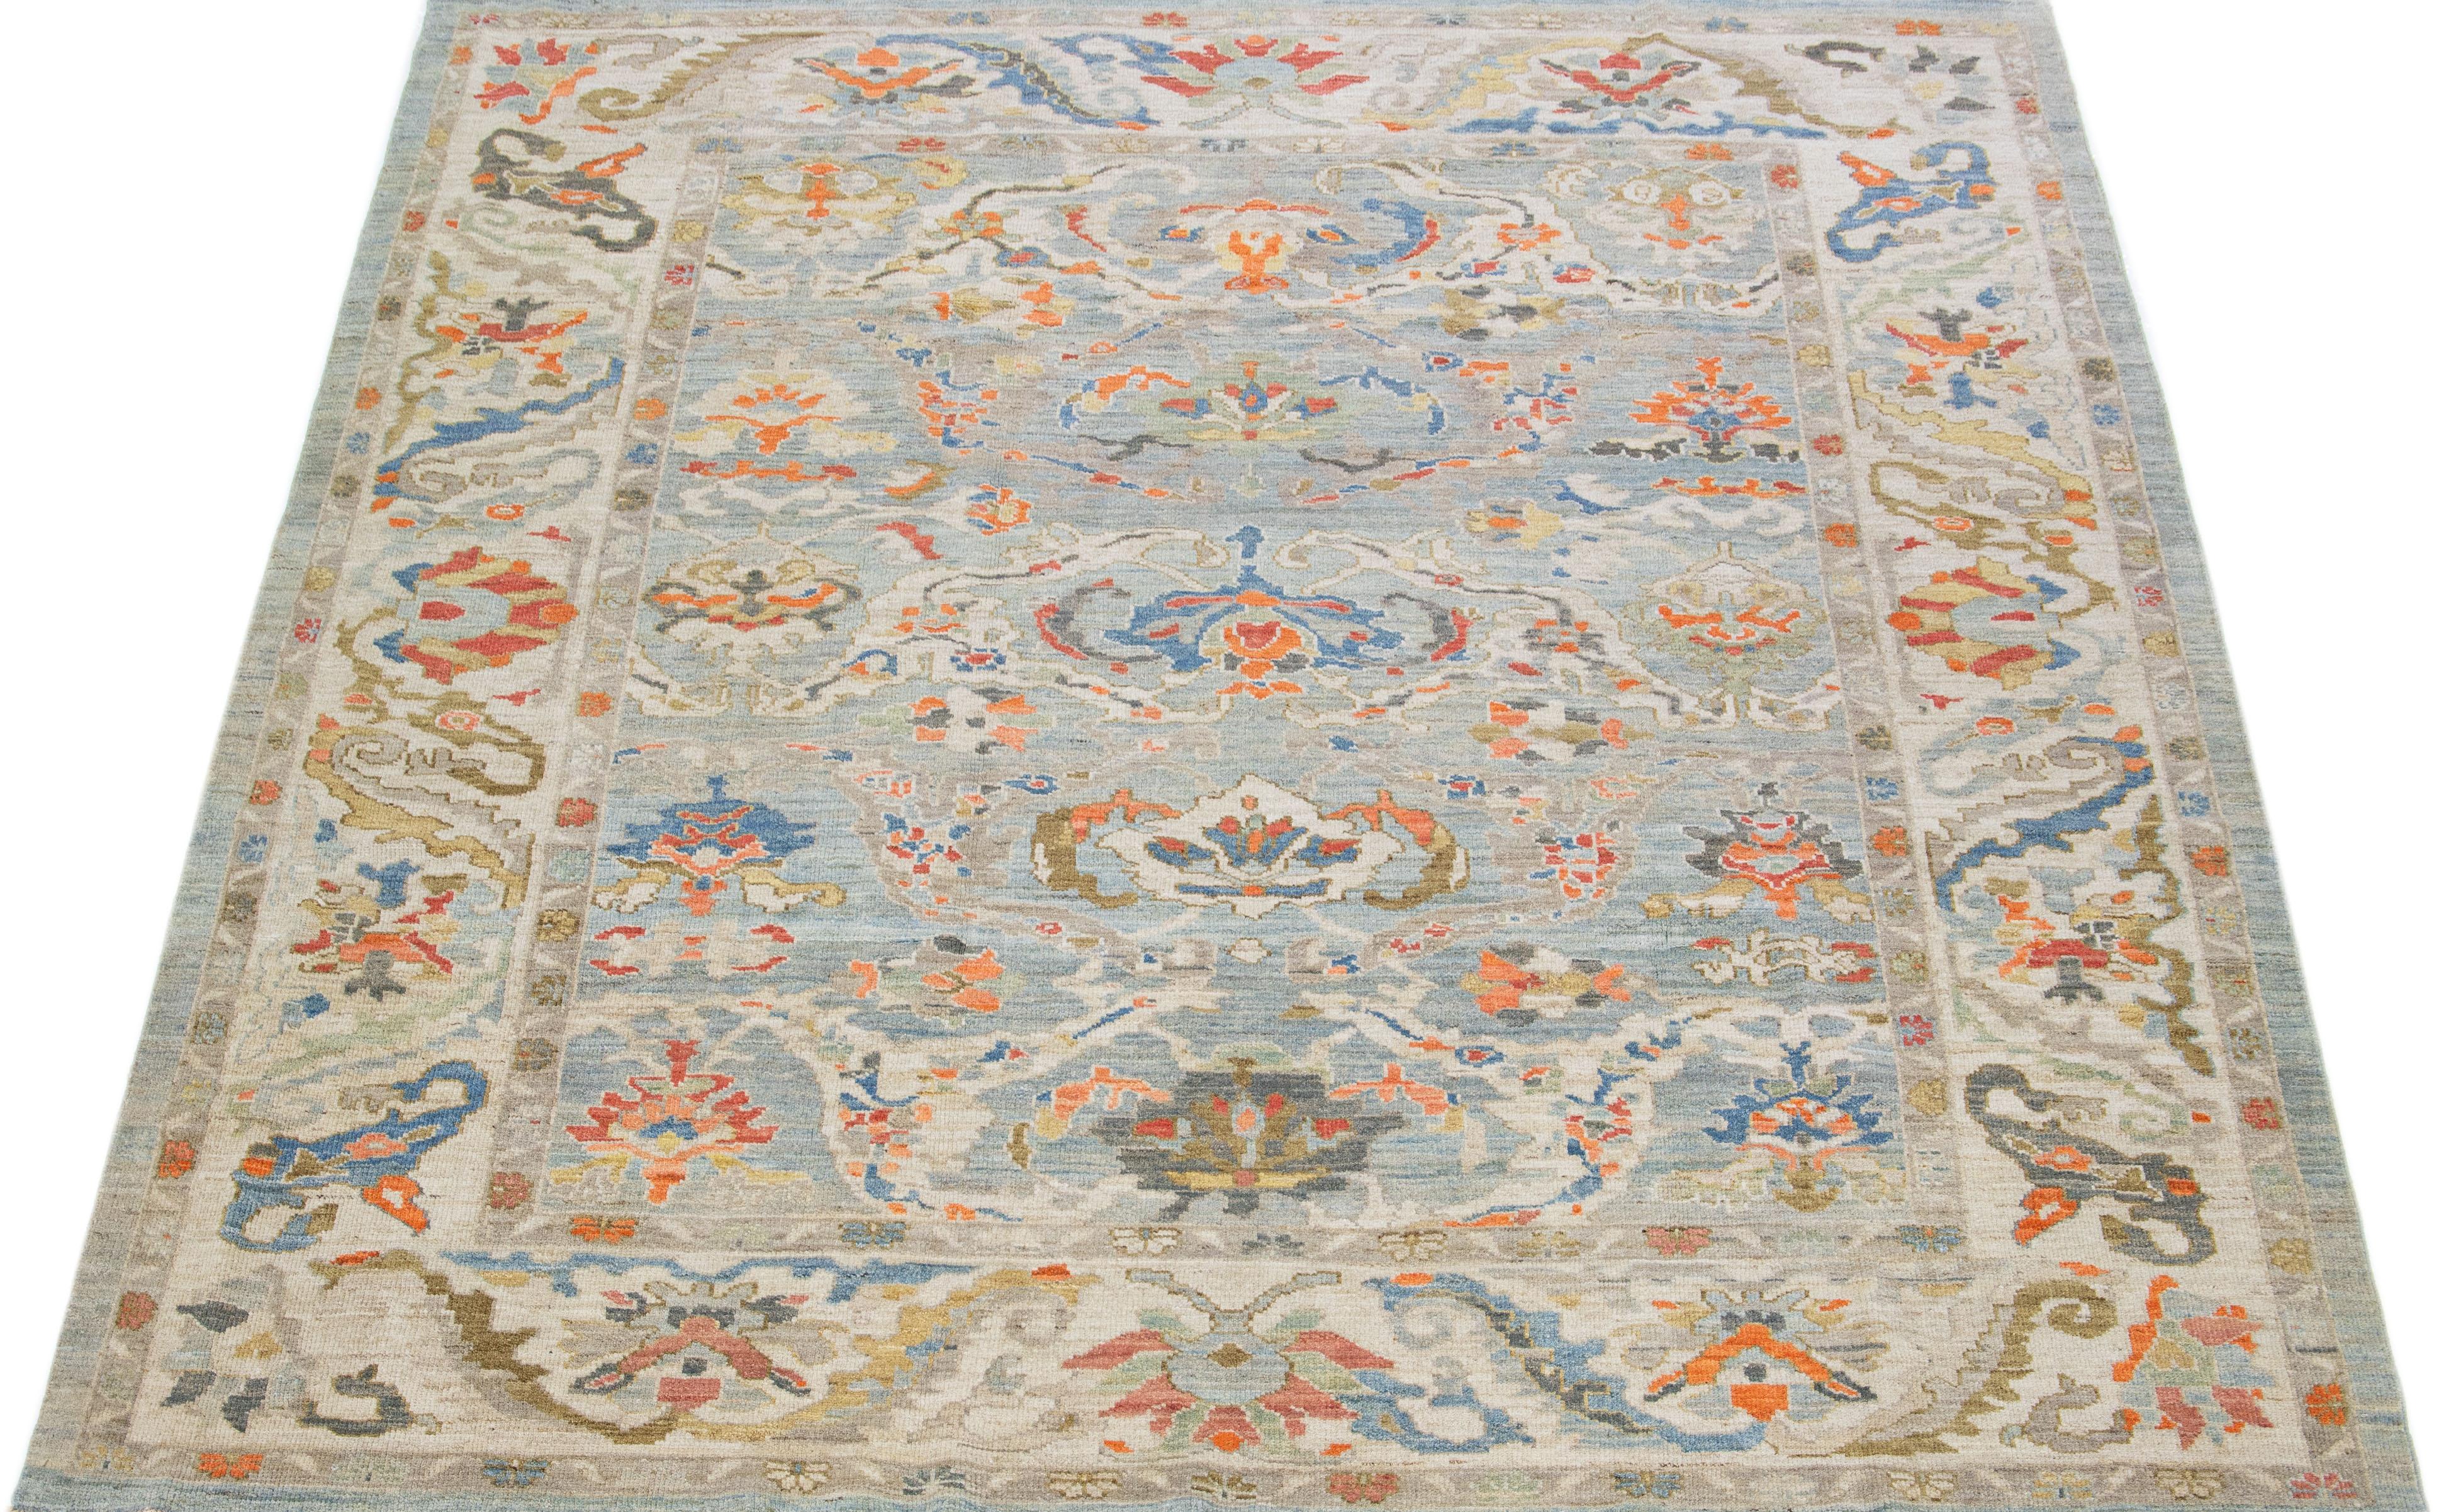 Schöner moderner, handgeknüpfter Sultanabad-Wollteppich mit blauem Farbfeld. Dieser Teppich hat einen beigefarbenen Rahmen mit orangefarbenen, grauen und goldenen Akzenten in einem prächtigen floralen Allover-Muster.

Dieser Teppich misst: 9'1